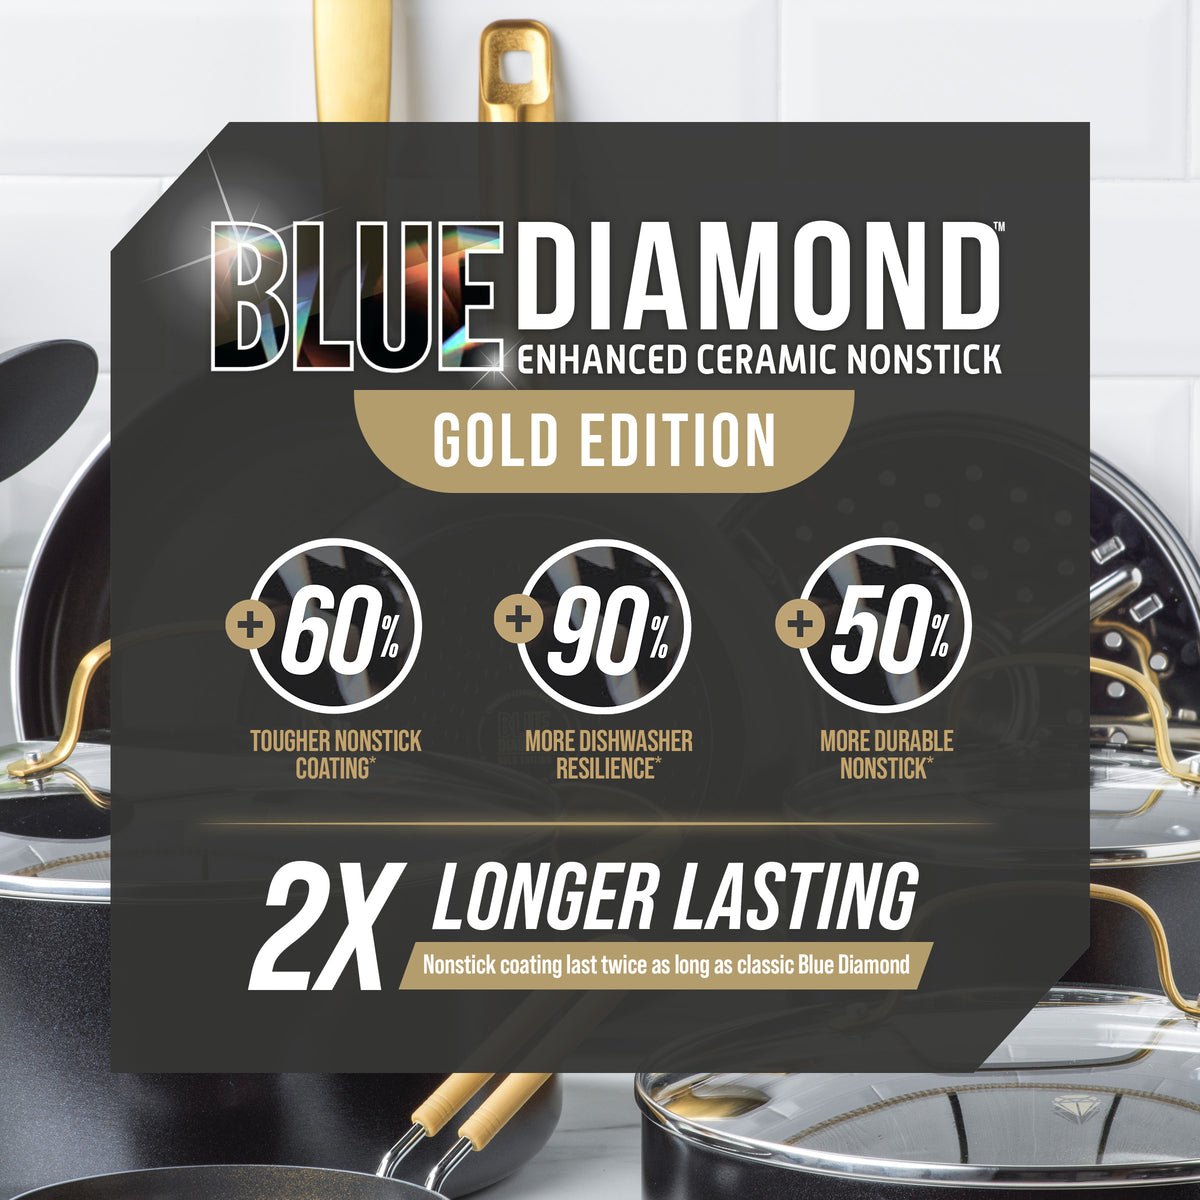 Blue Diamond Classic 10-Piece Cookware Set